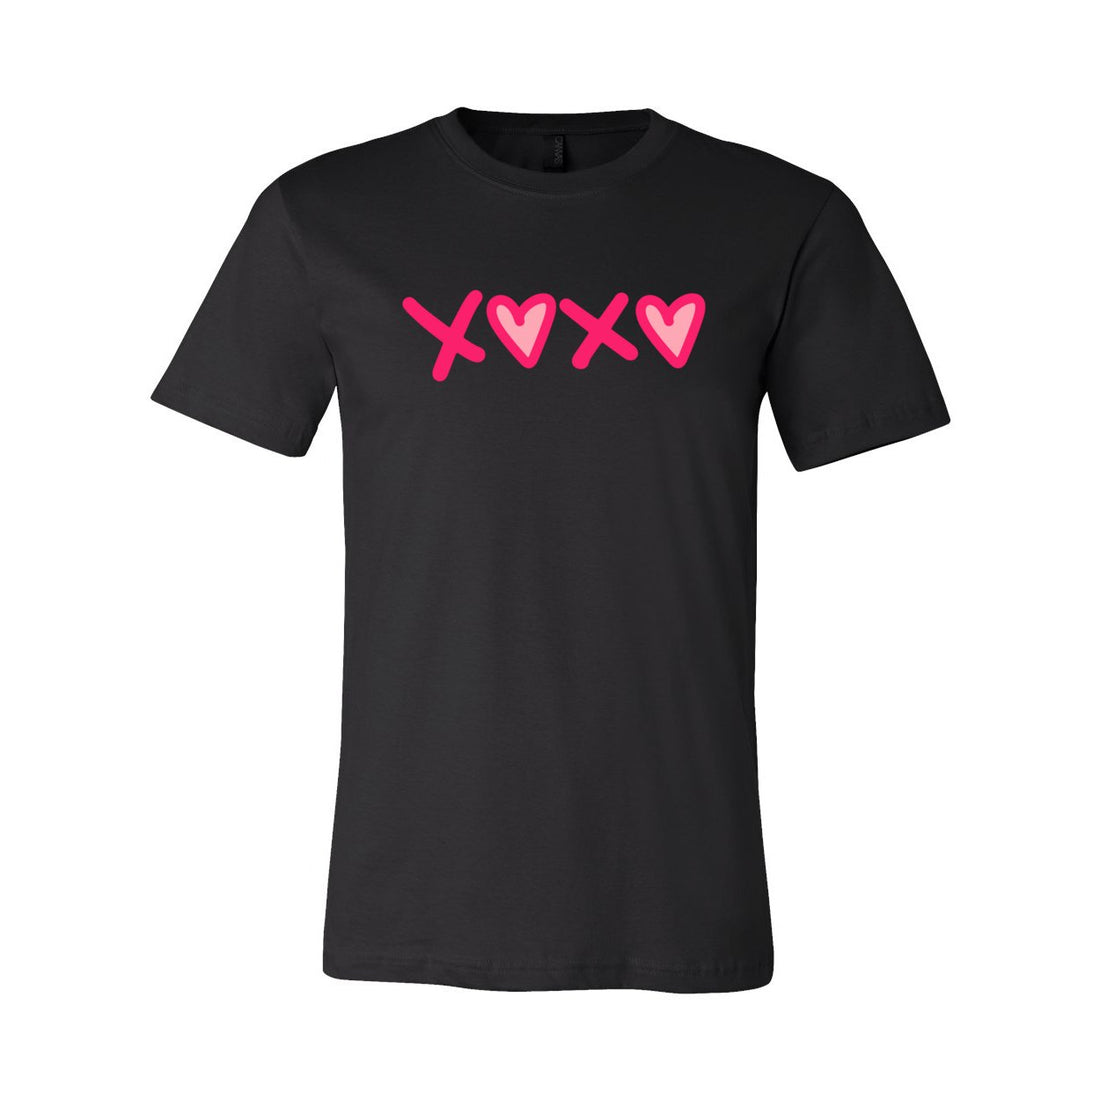 XOXOX Short Sleeve Jersey Tee - T-Shirts - Positively Sassy - XOXOX Short Sleeve Jersey Tee